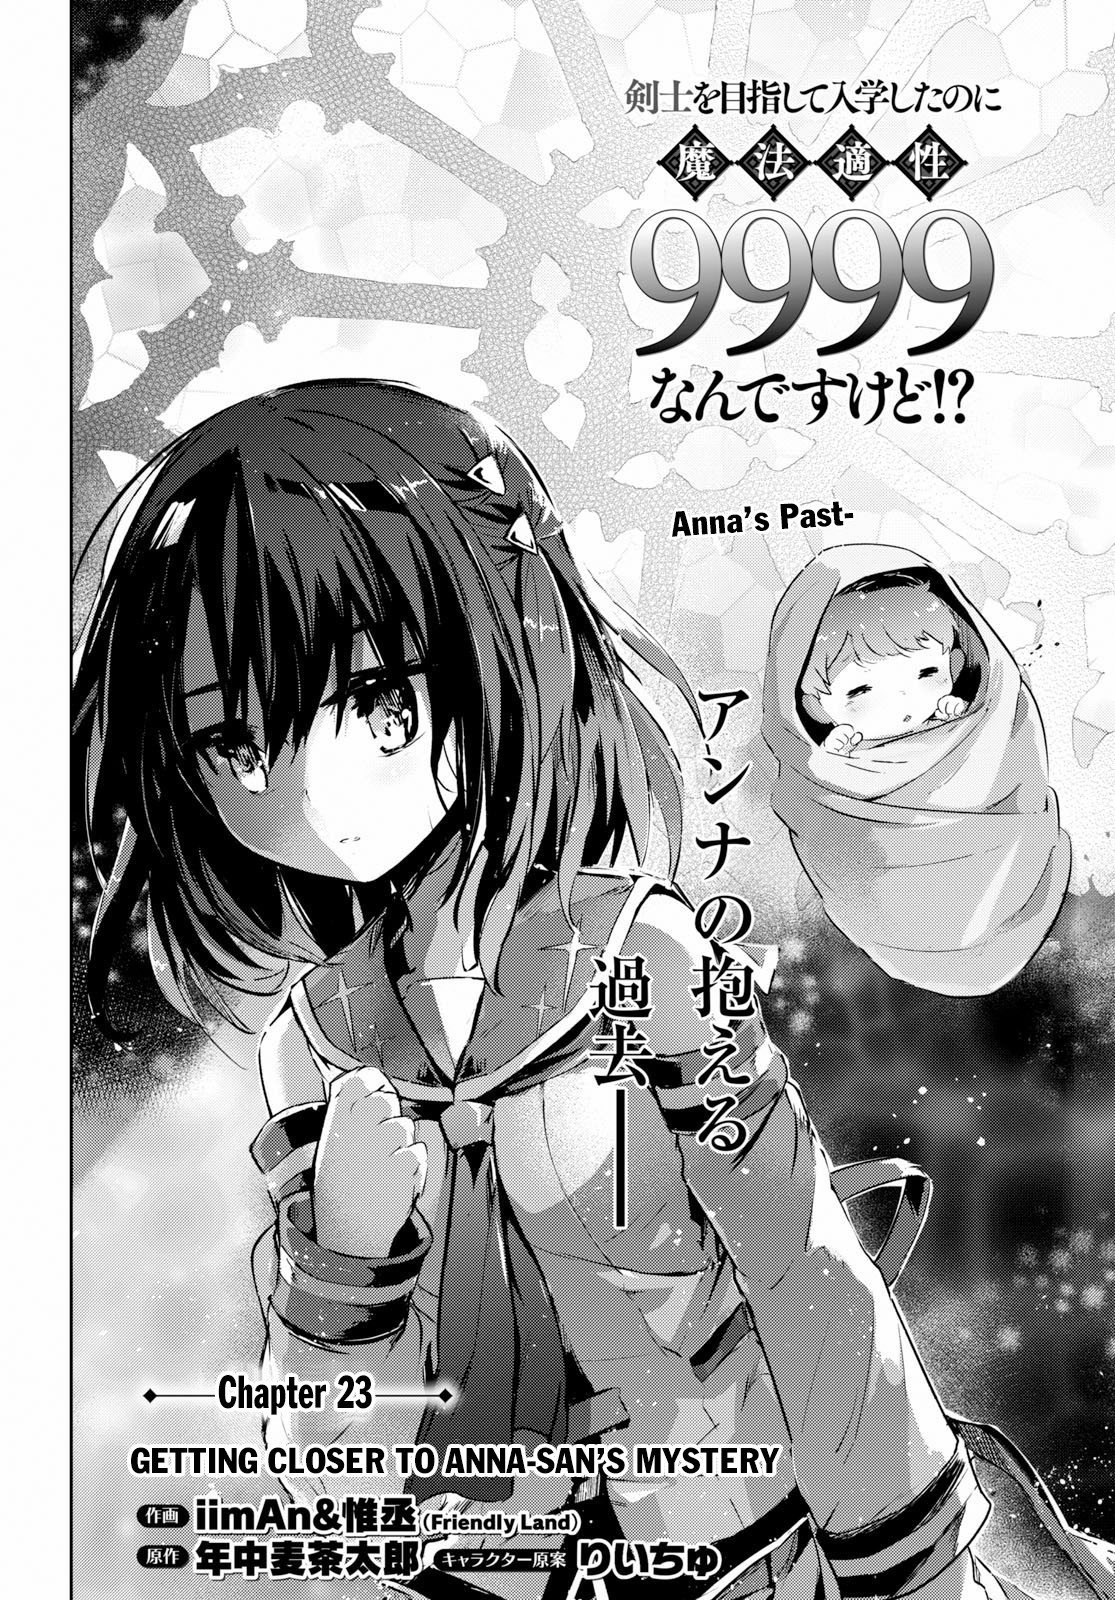 Kenshi O Mezashite Nyugaku Shitanoni Maho Tekisei 9999 Nandesukedo!? Chapter 23: Getting Closer To Anna-San's Mystery - Picture 3